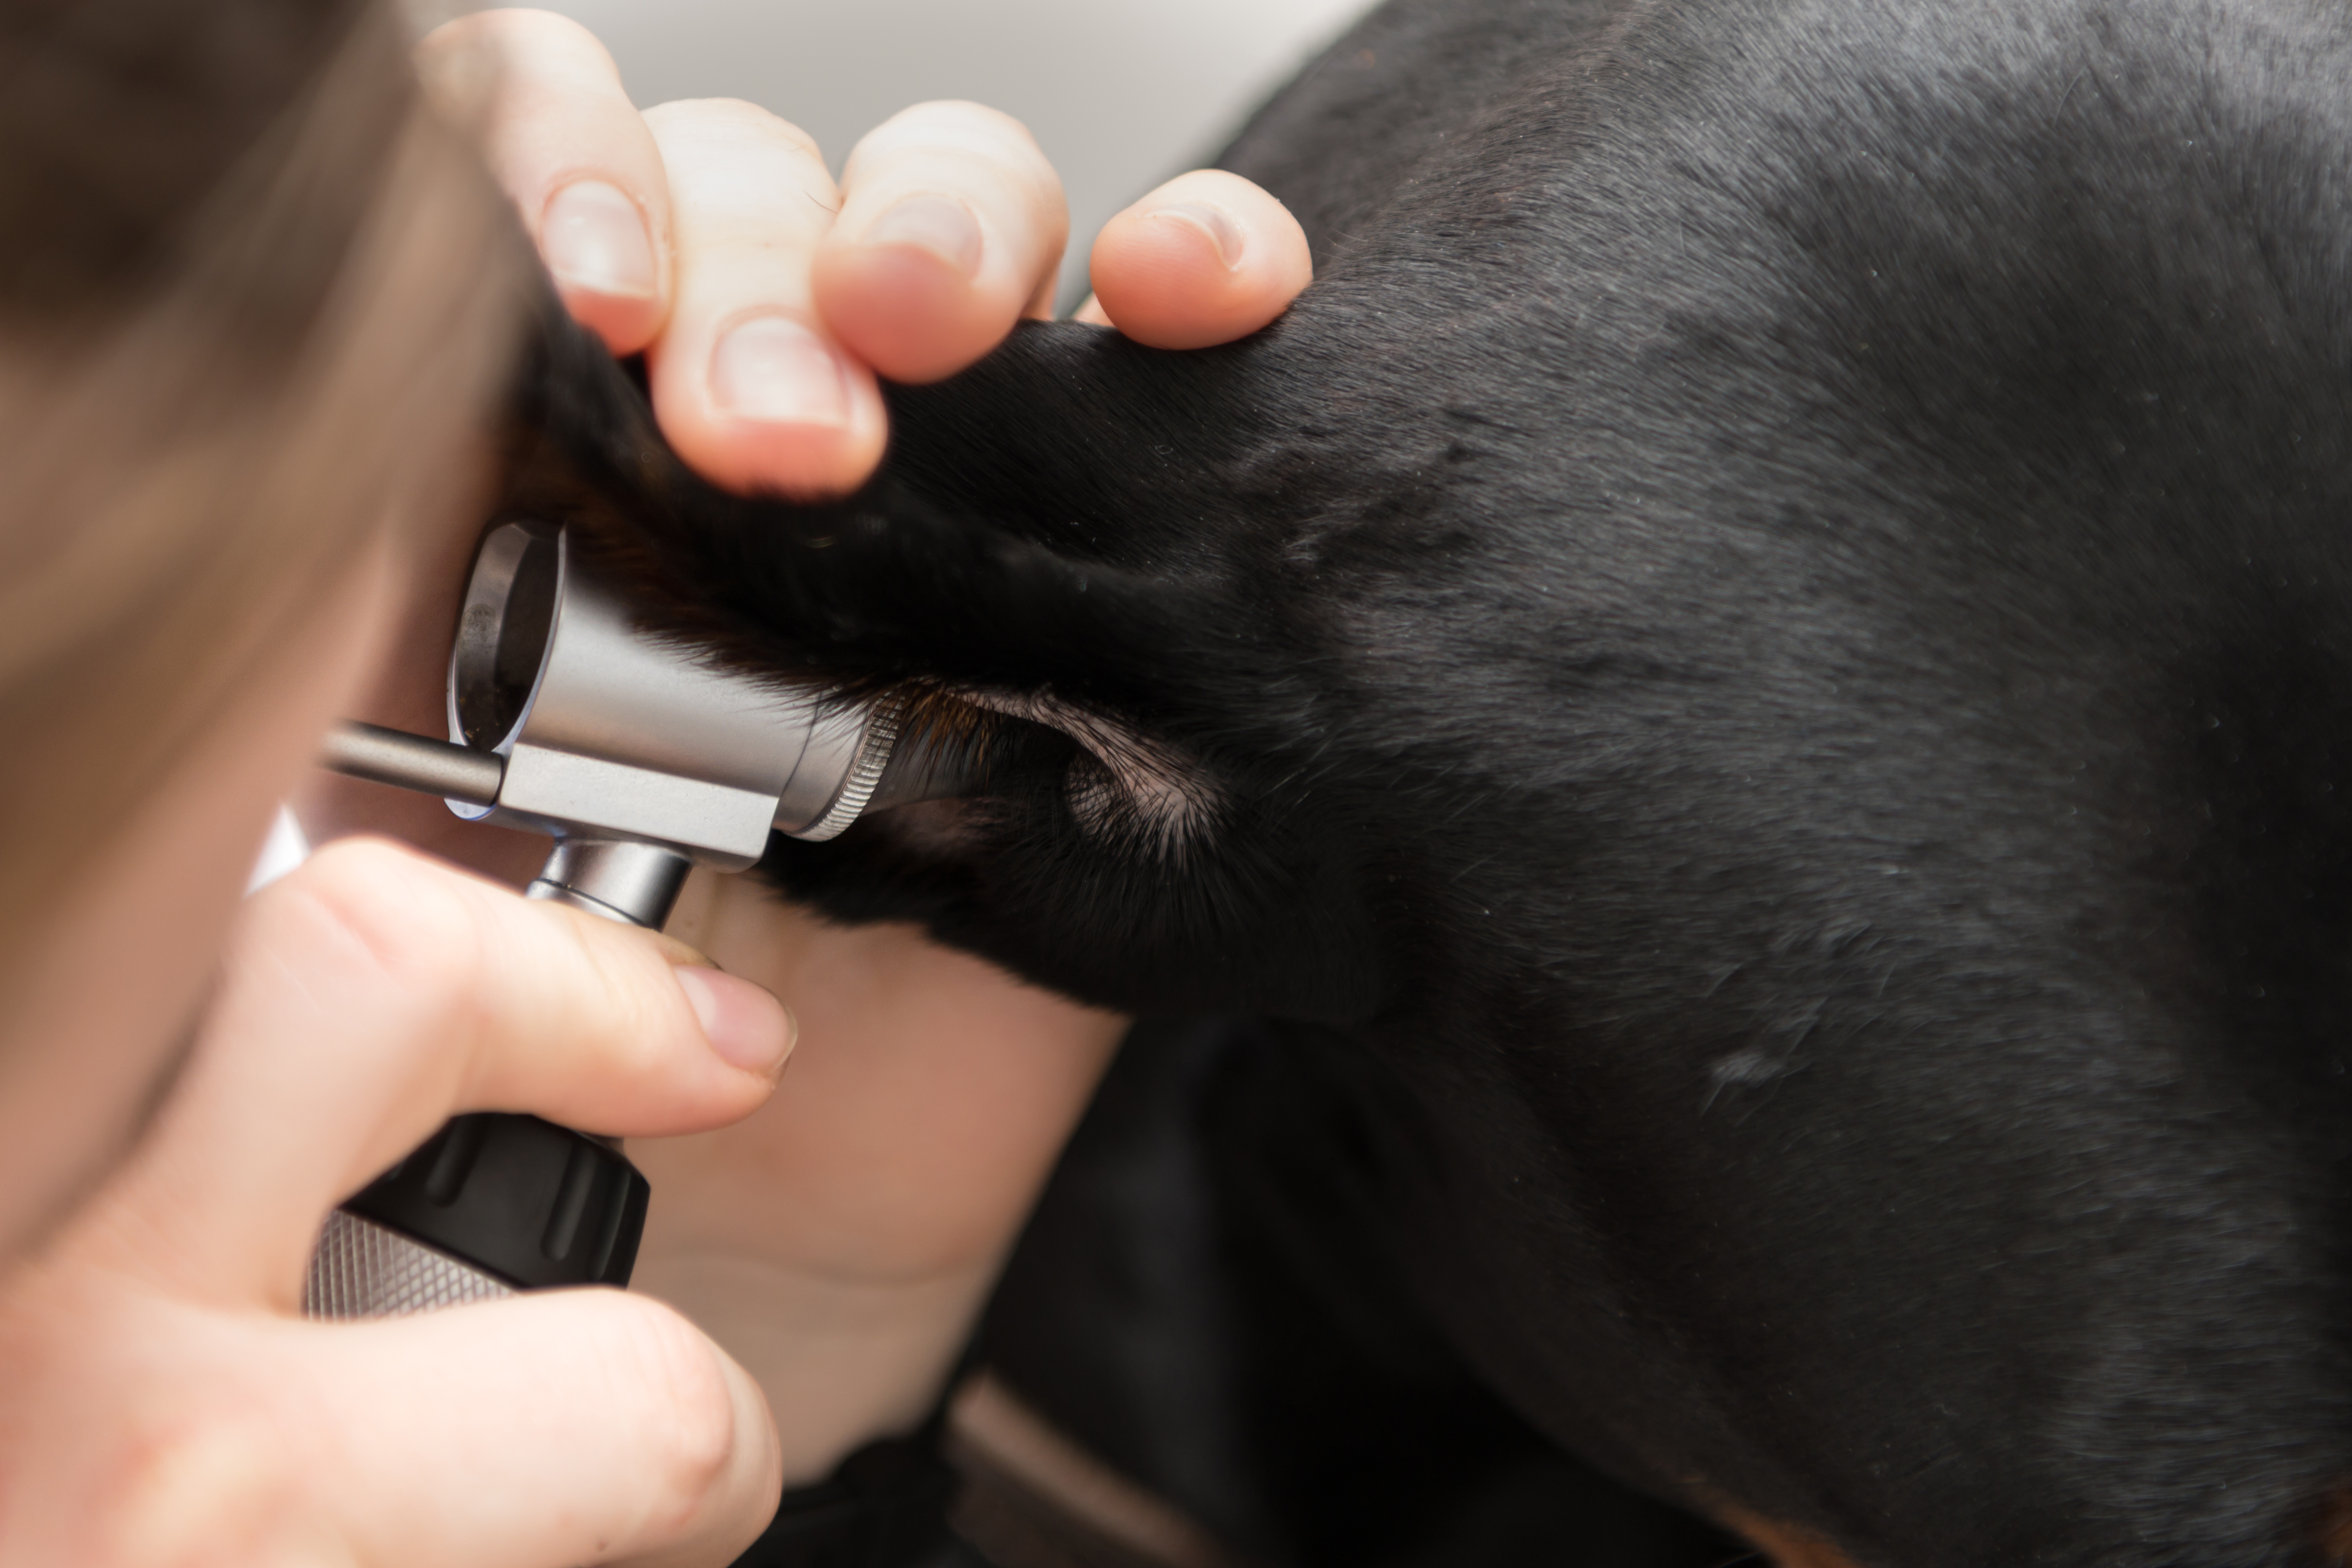 how do you treat dog ear hematoma